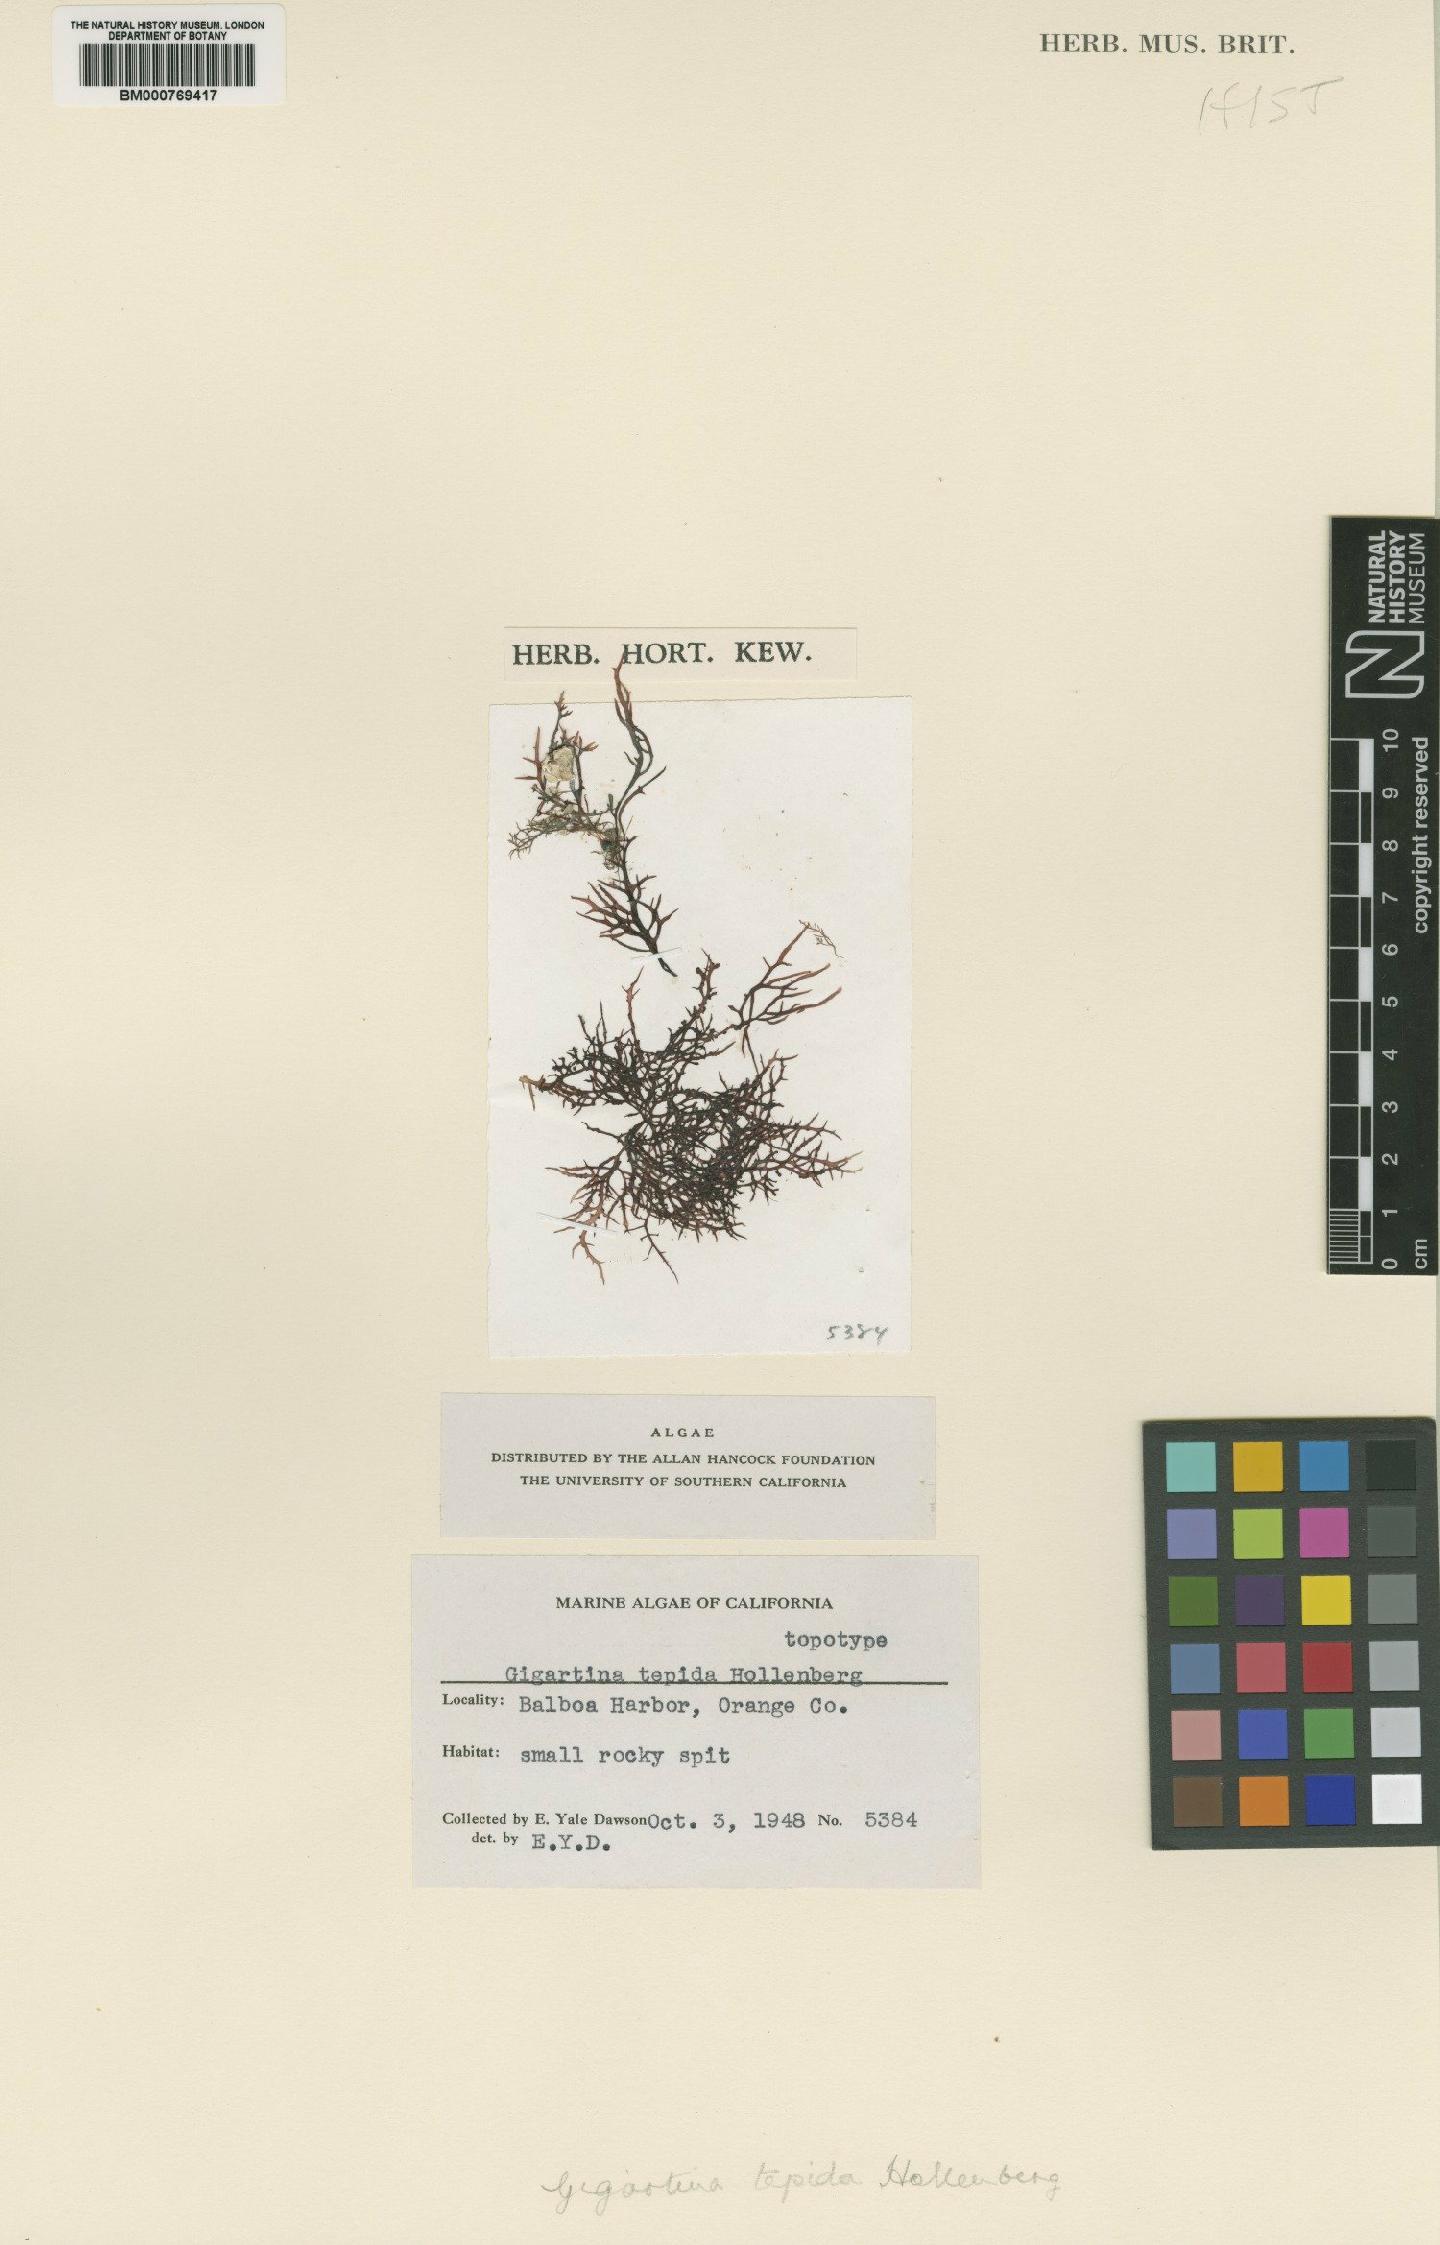 To NHMUK collection (Gigartina tepida Hollenburg; TYPE; NHMUK:ecatalogue:4519273)